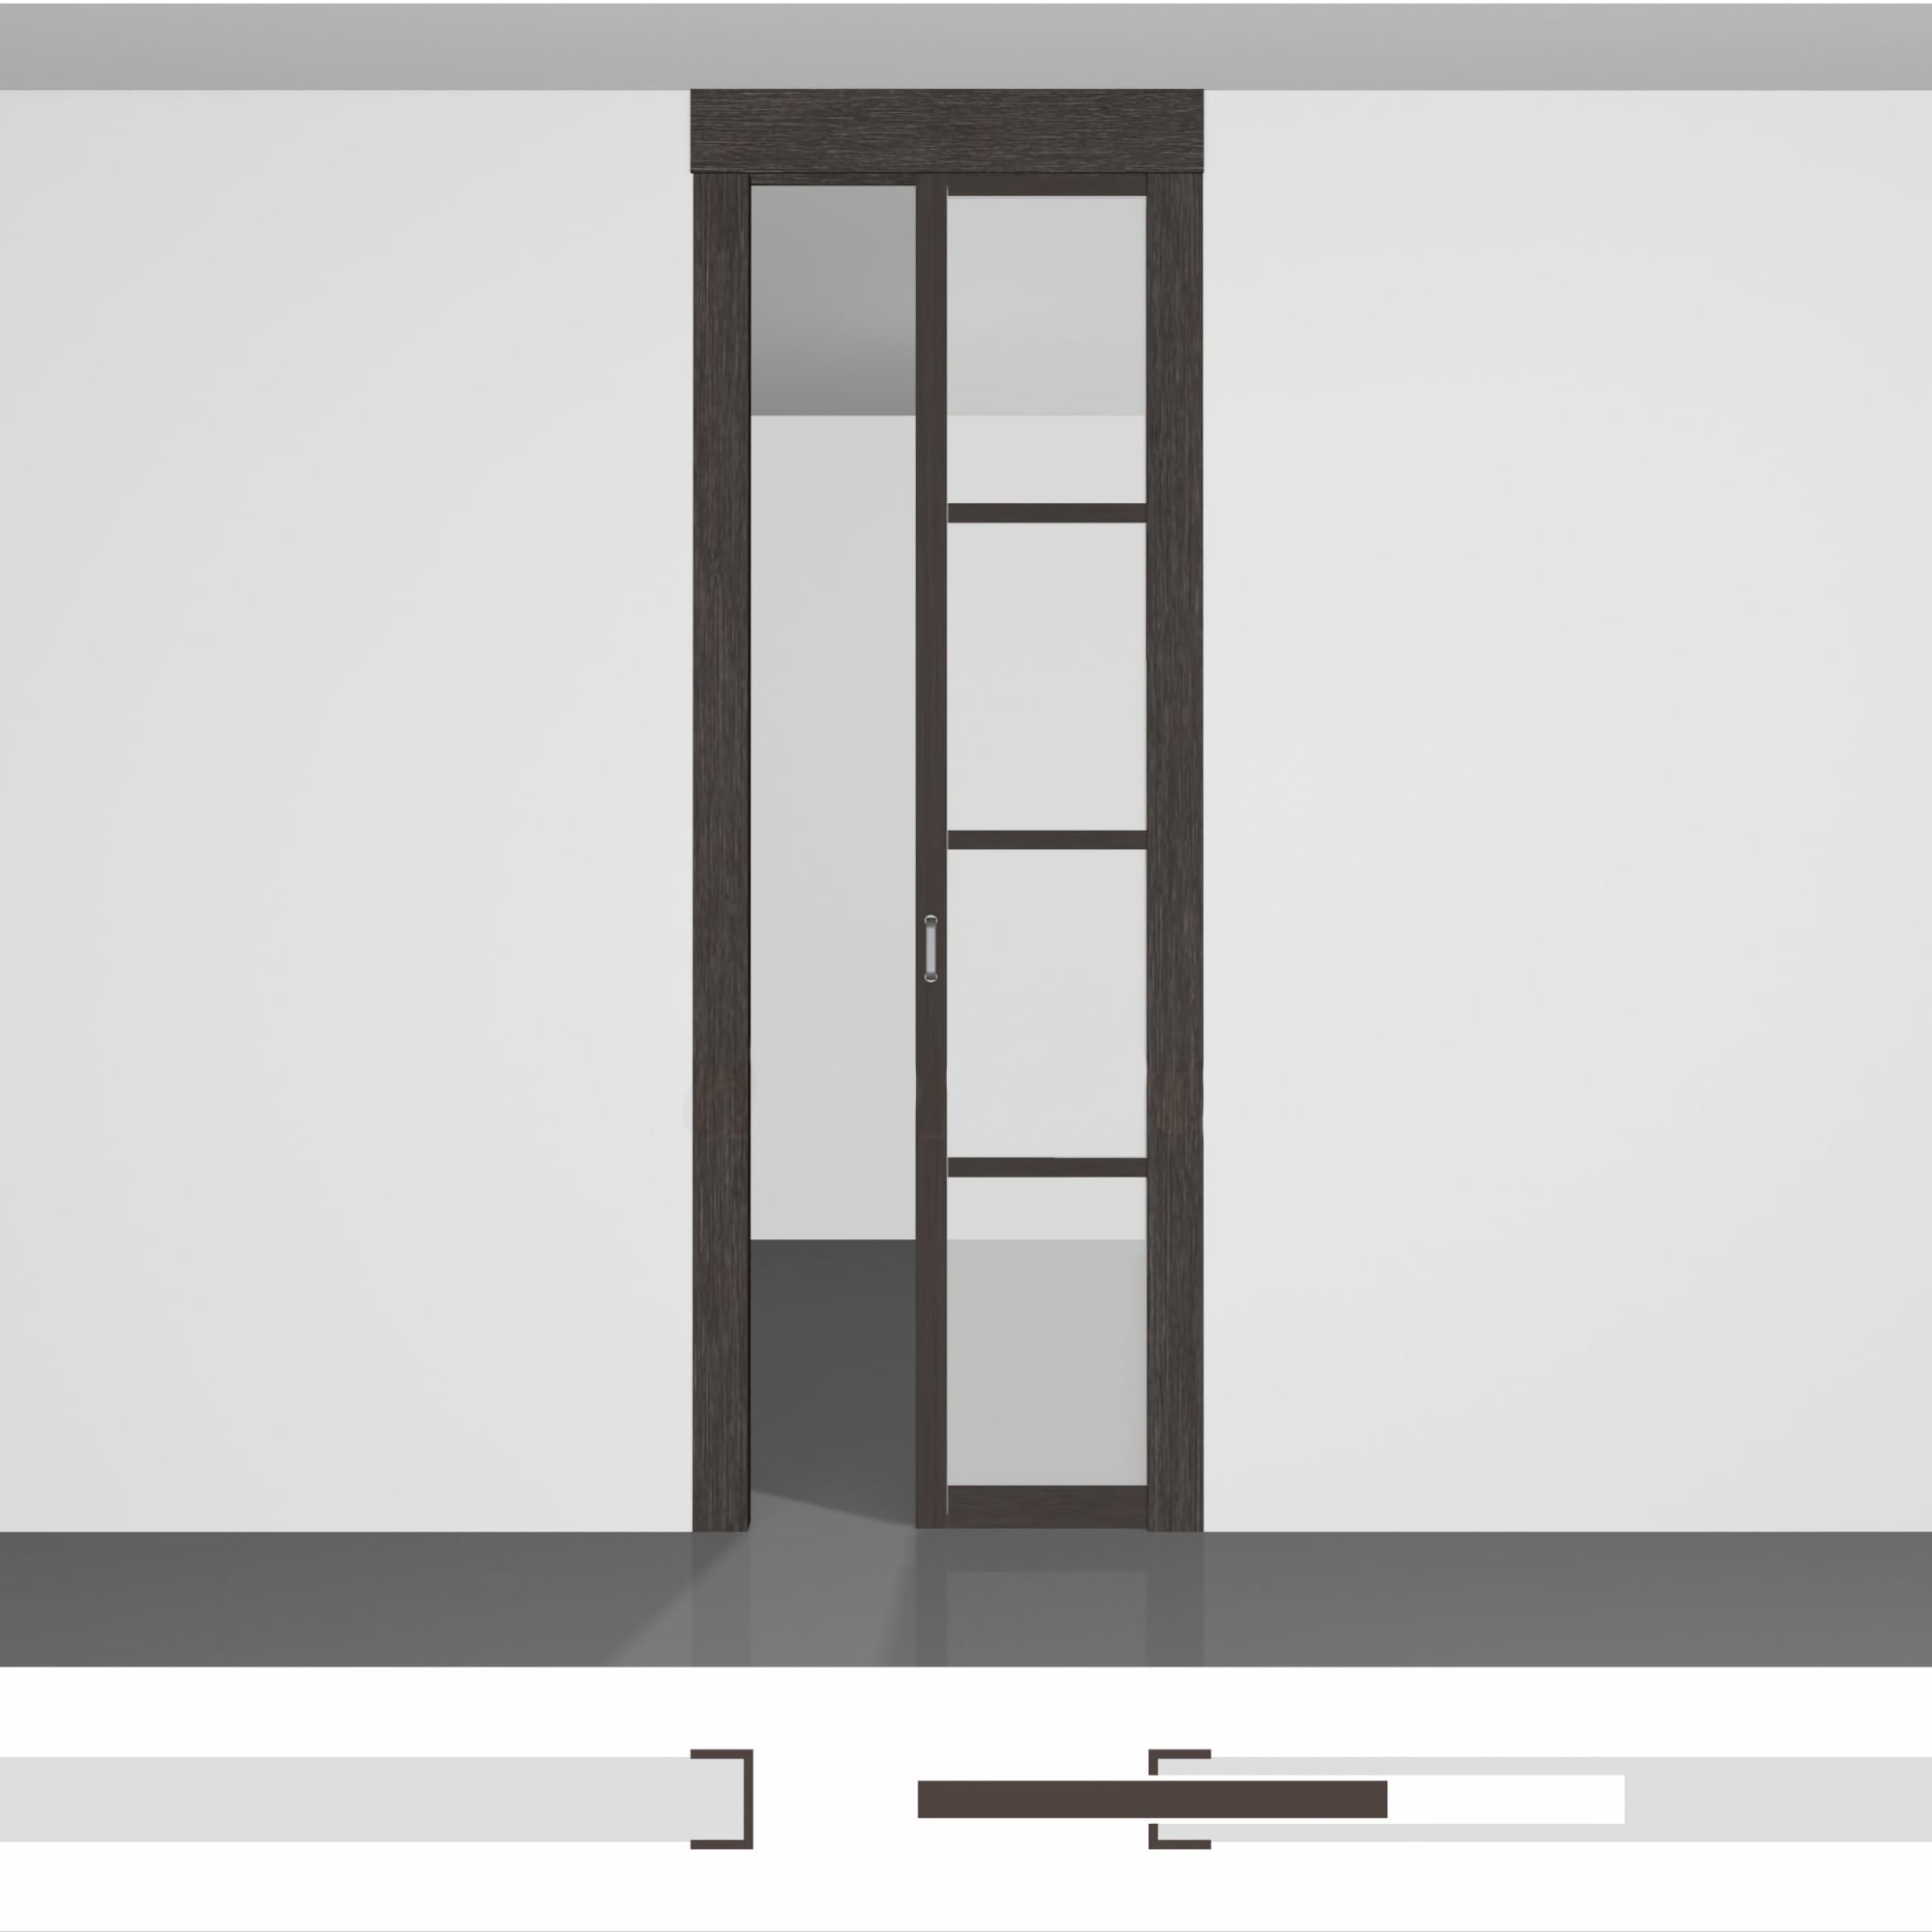 Розсувні двері на кухню P01.2в • полотно висотою до 2430 мм приховане в стіну